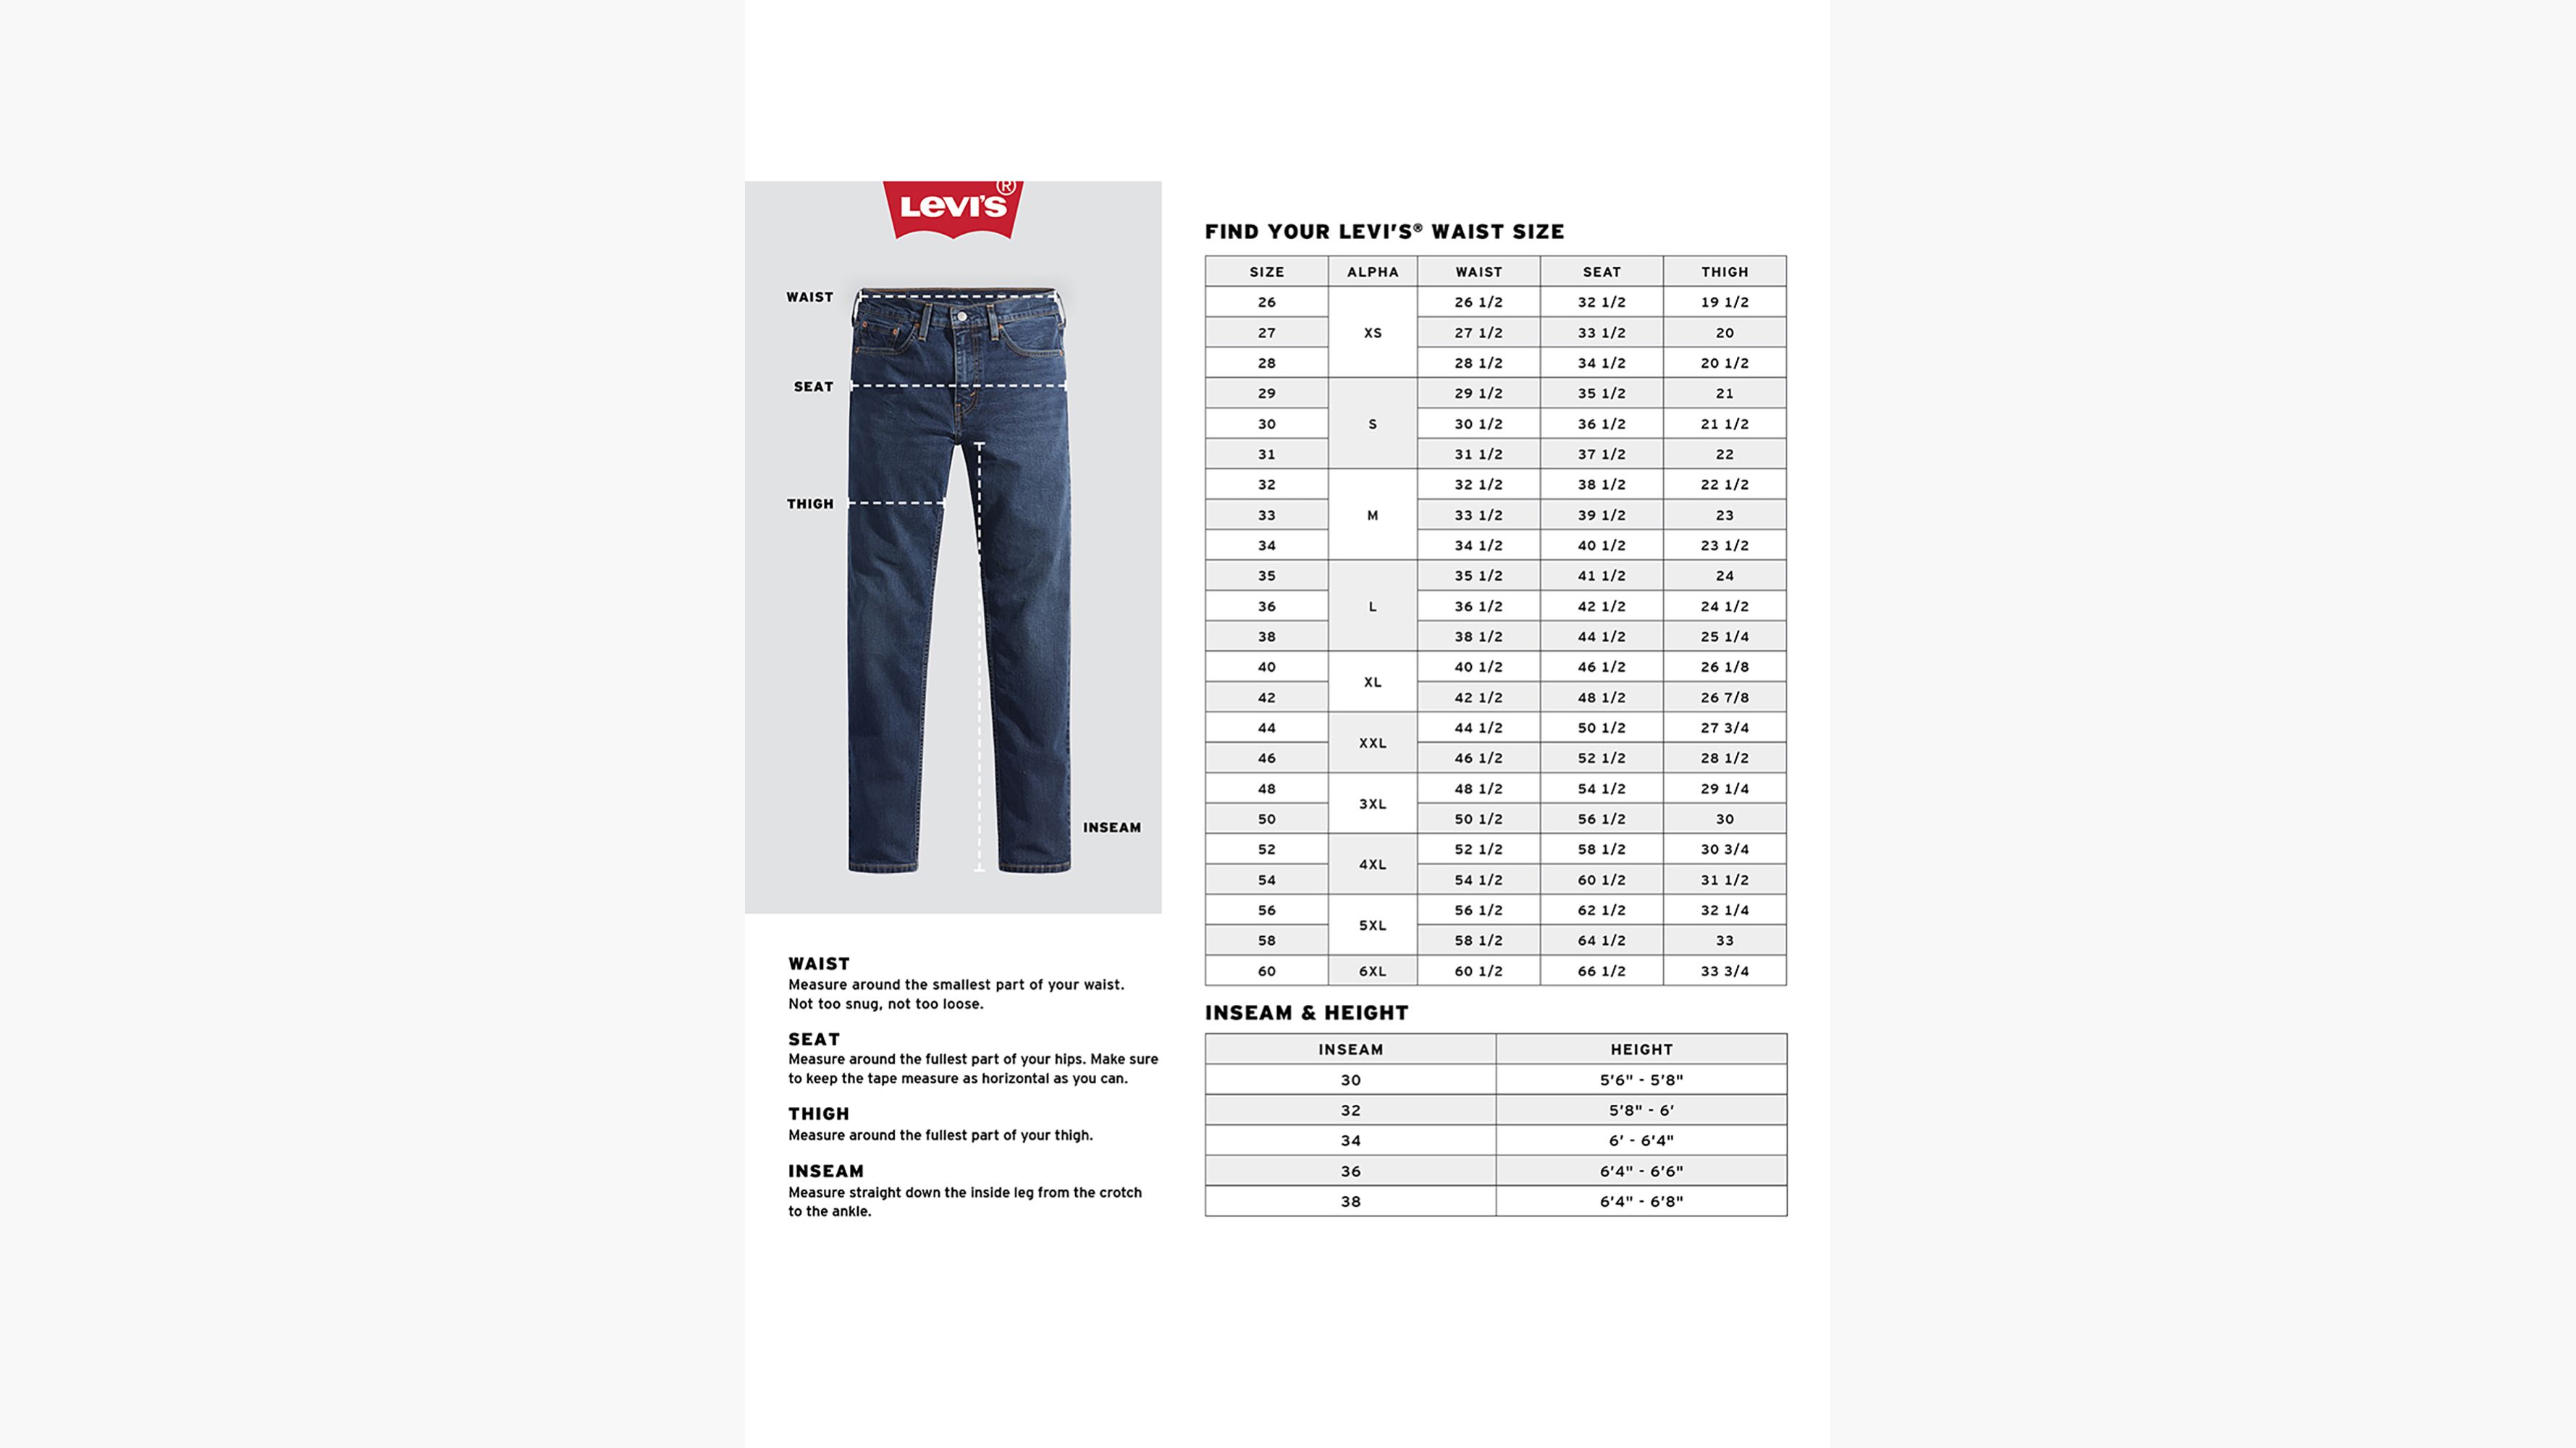 505™ Regular Fit Men's Jeans